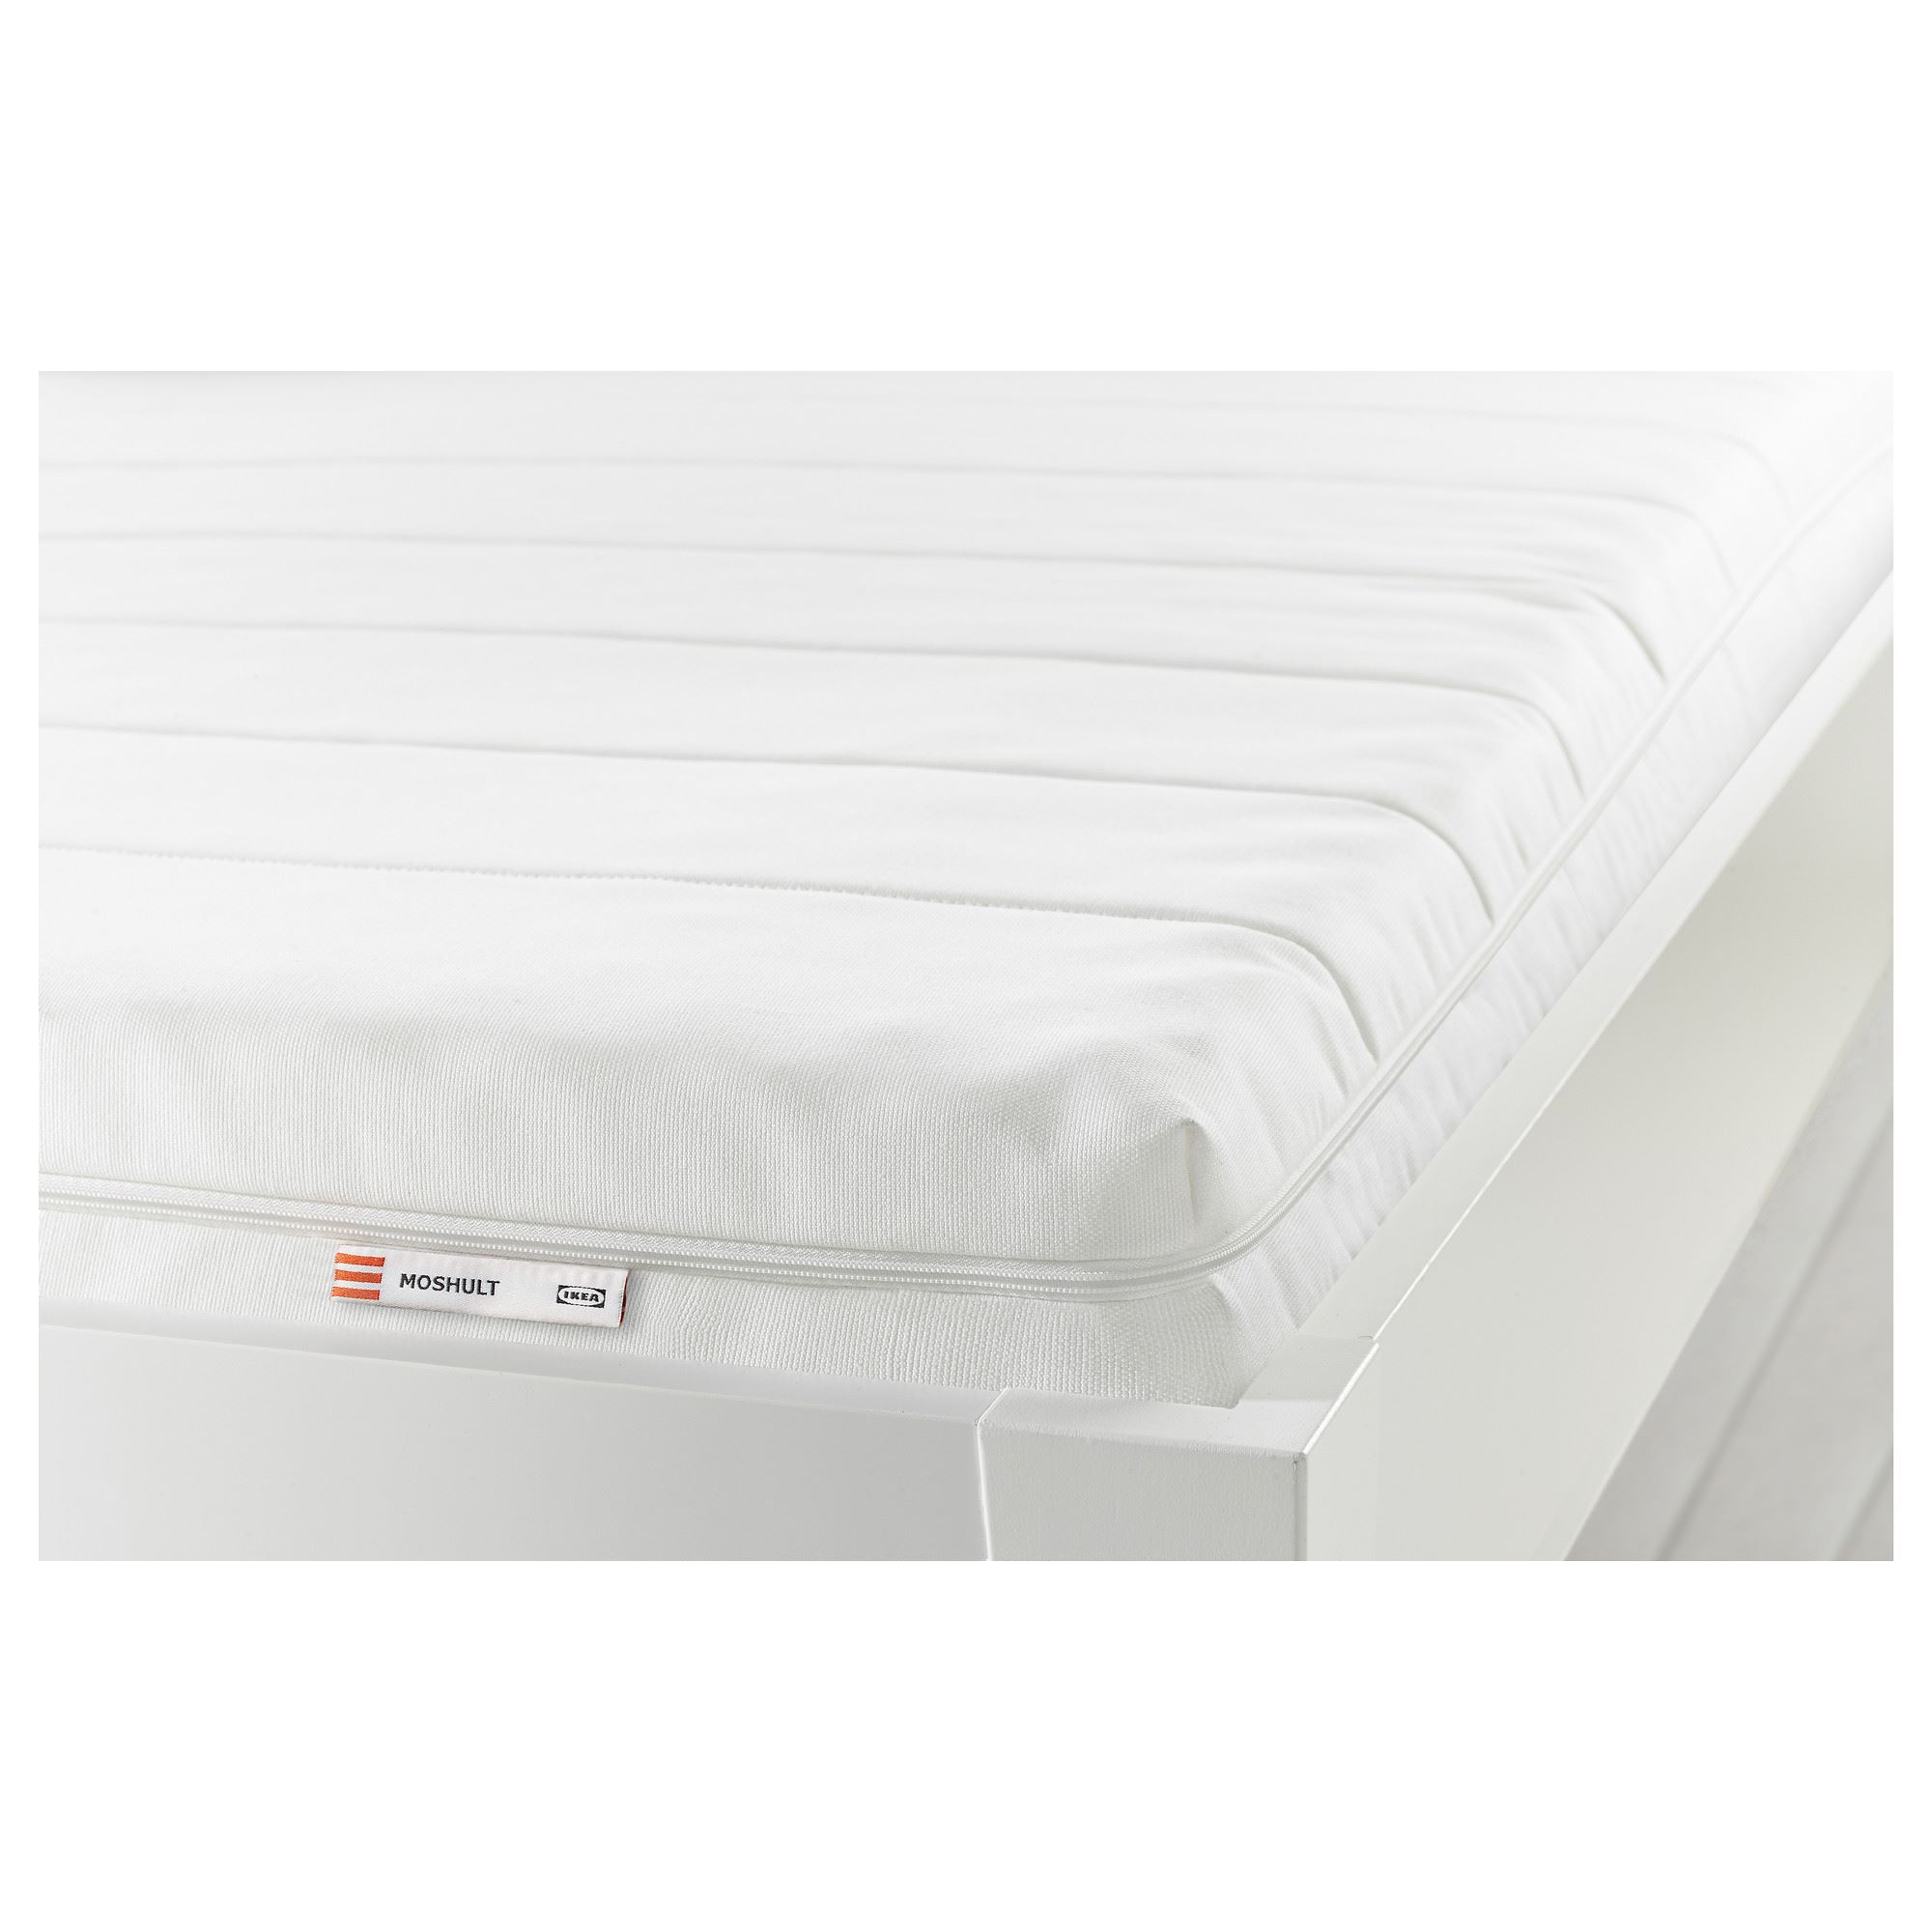 MOSHULT tek kişilik yatak, beyazsert, 80x200 cm